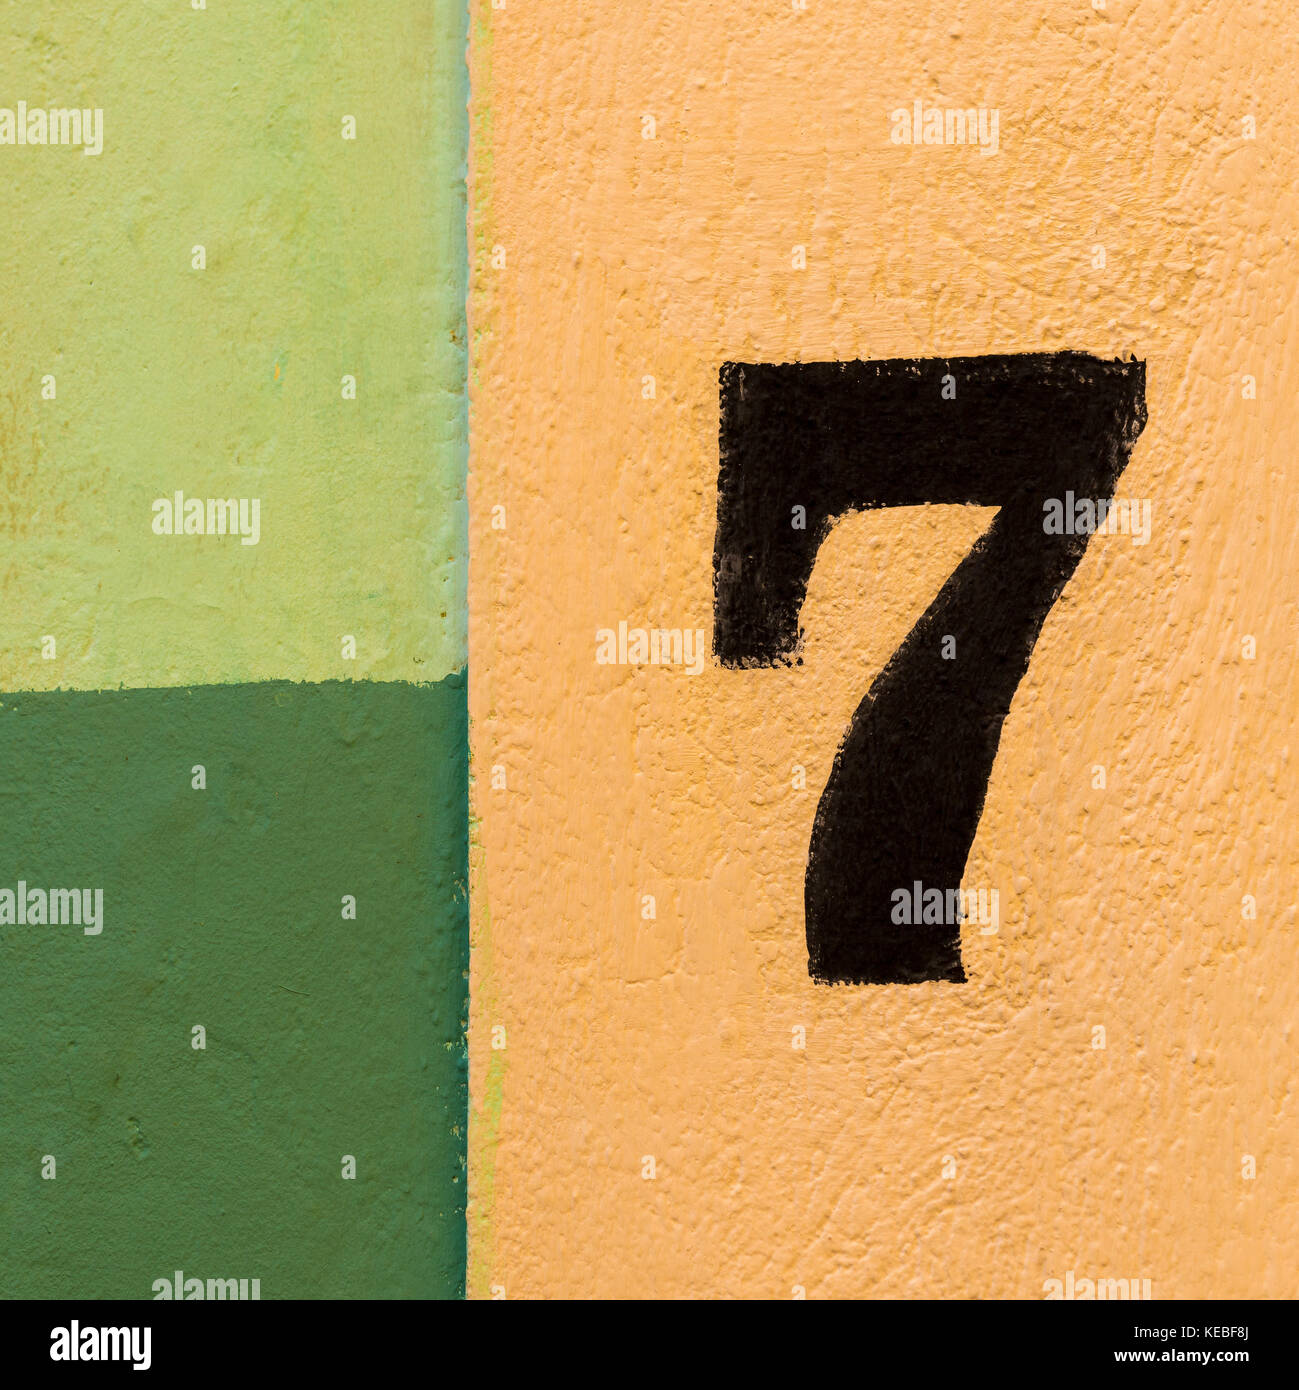 Die Zahl Sieben auf einem farbenfrohen Wand von gelben und grünen Flecken bemalt. Stockfoto